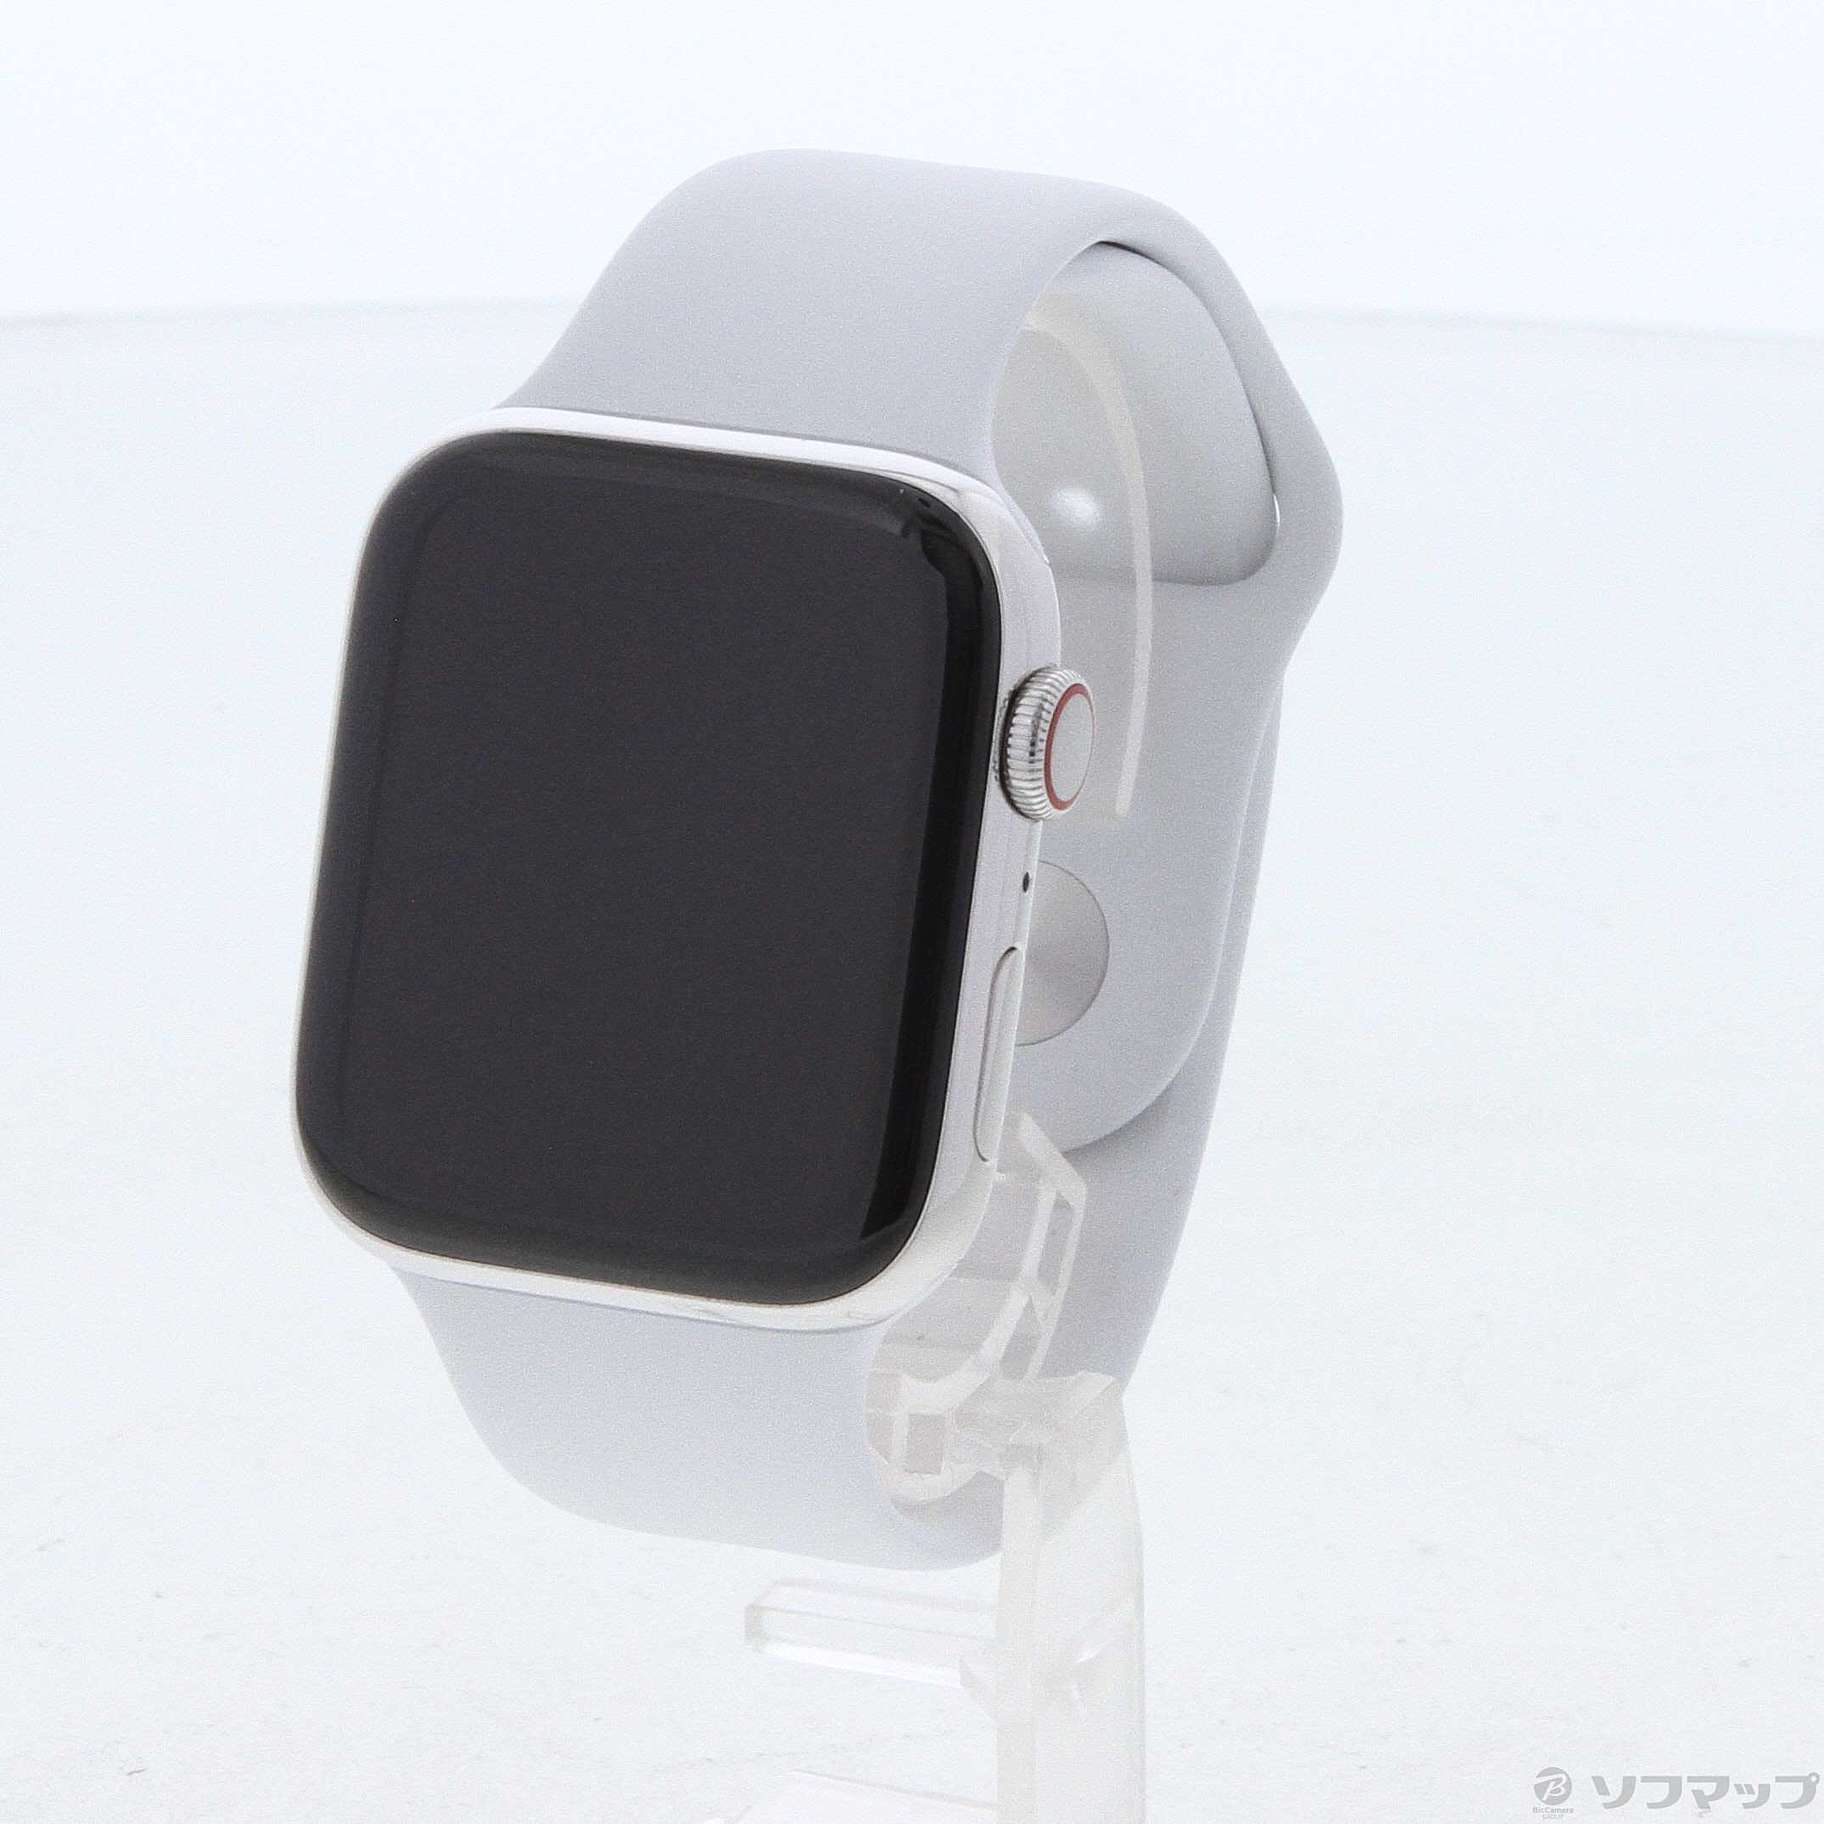 Apple Watch 4 Cellularモデル 44mm 美品 バンド付